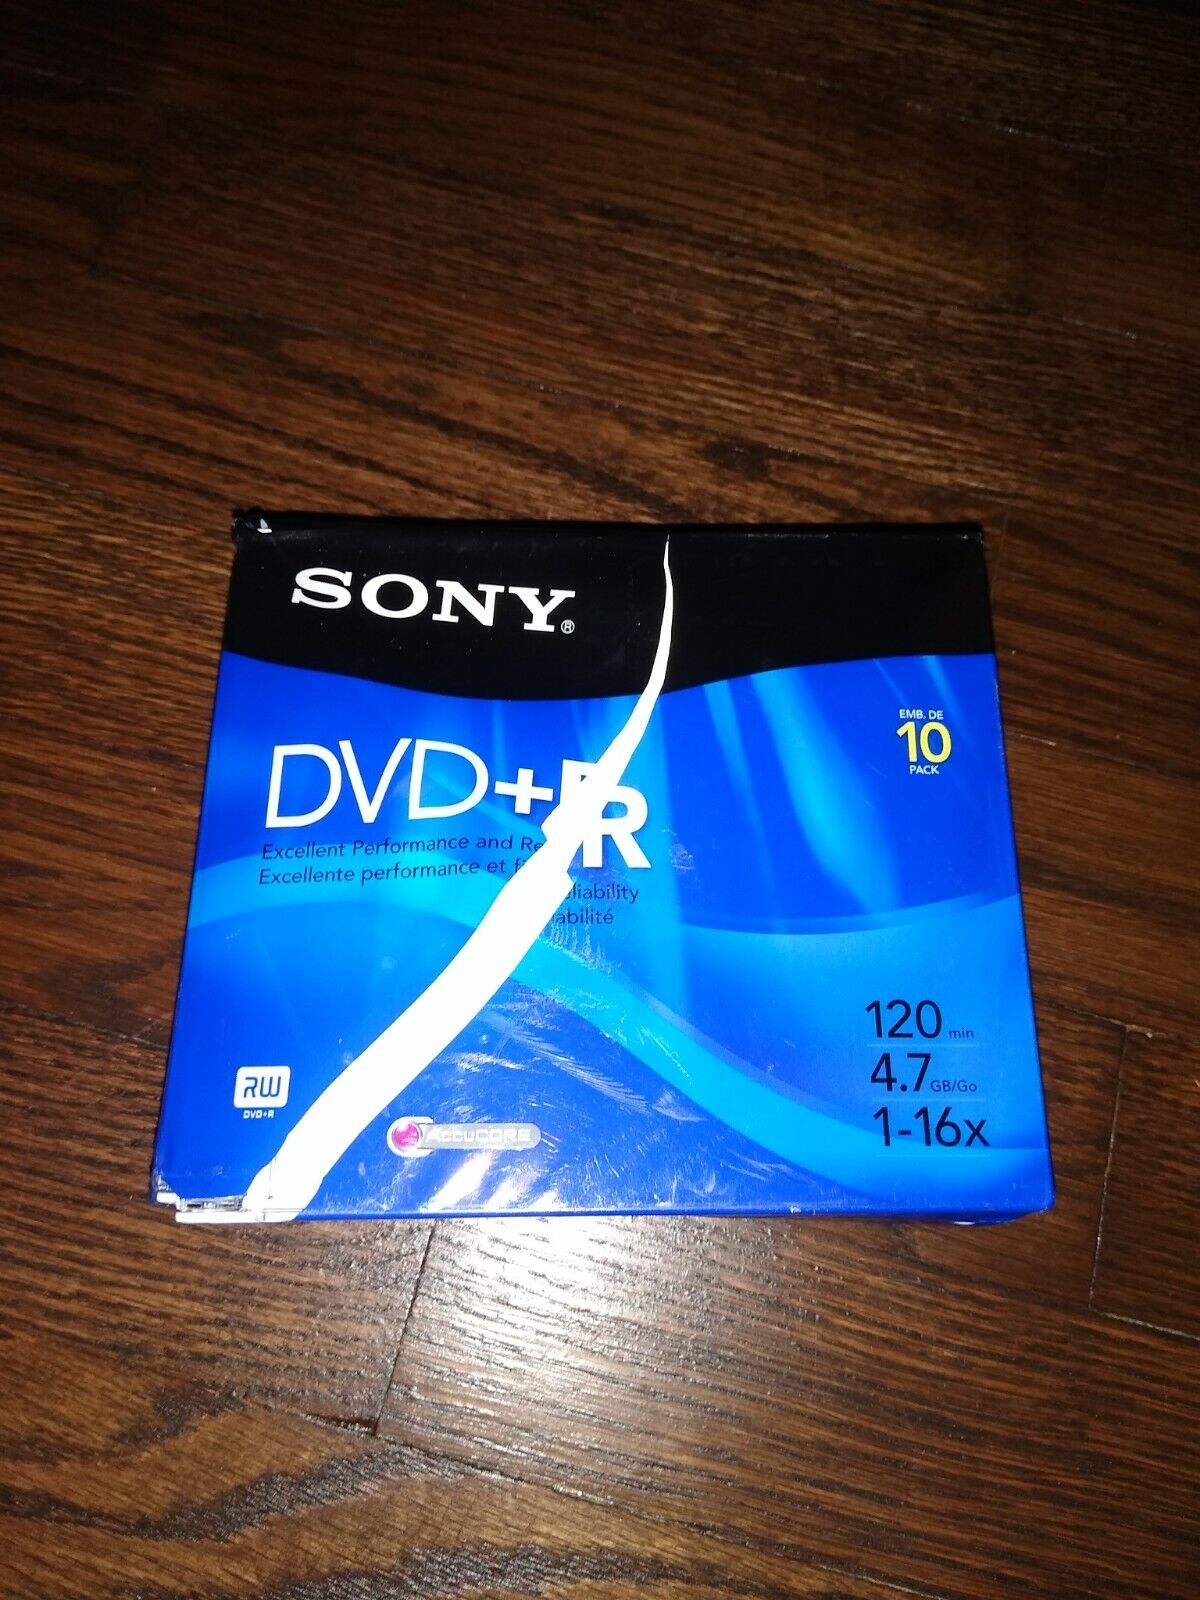 10DPR47L4 2005 Sony DVD+R 10 Pack DVD & Jewel Case 4.7GB 120 Min 1x-16x open box